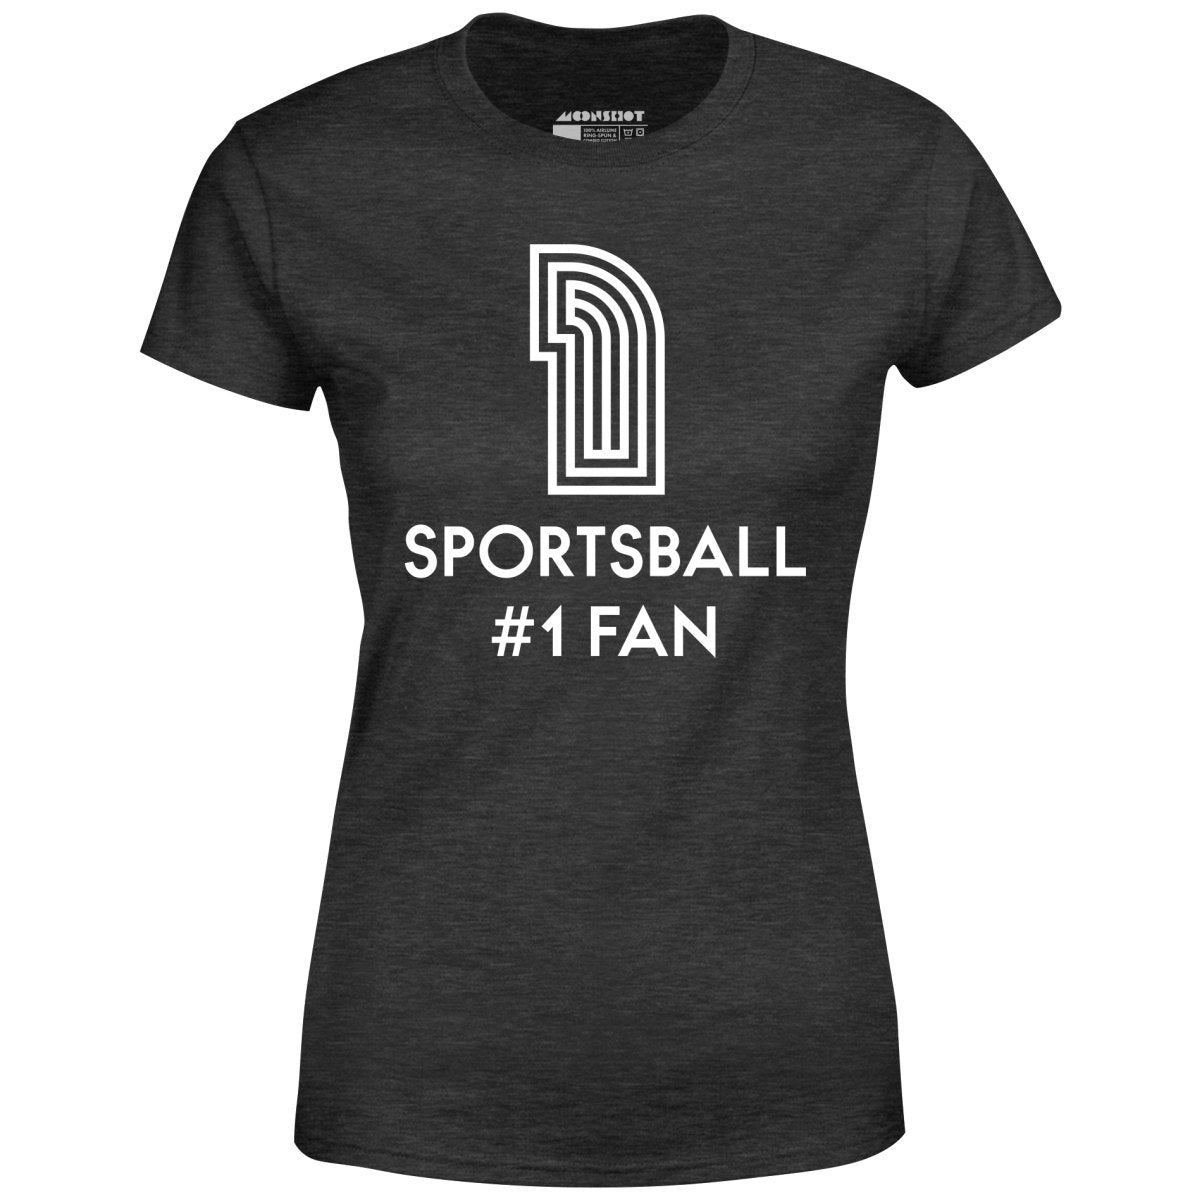 Sportsball #1 Fan - Women's T-Shirt